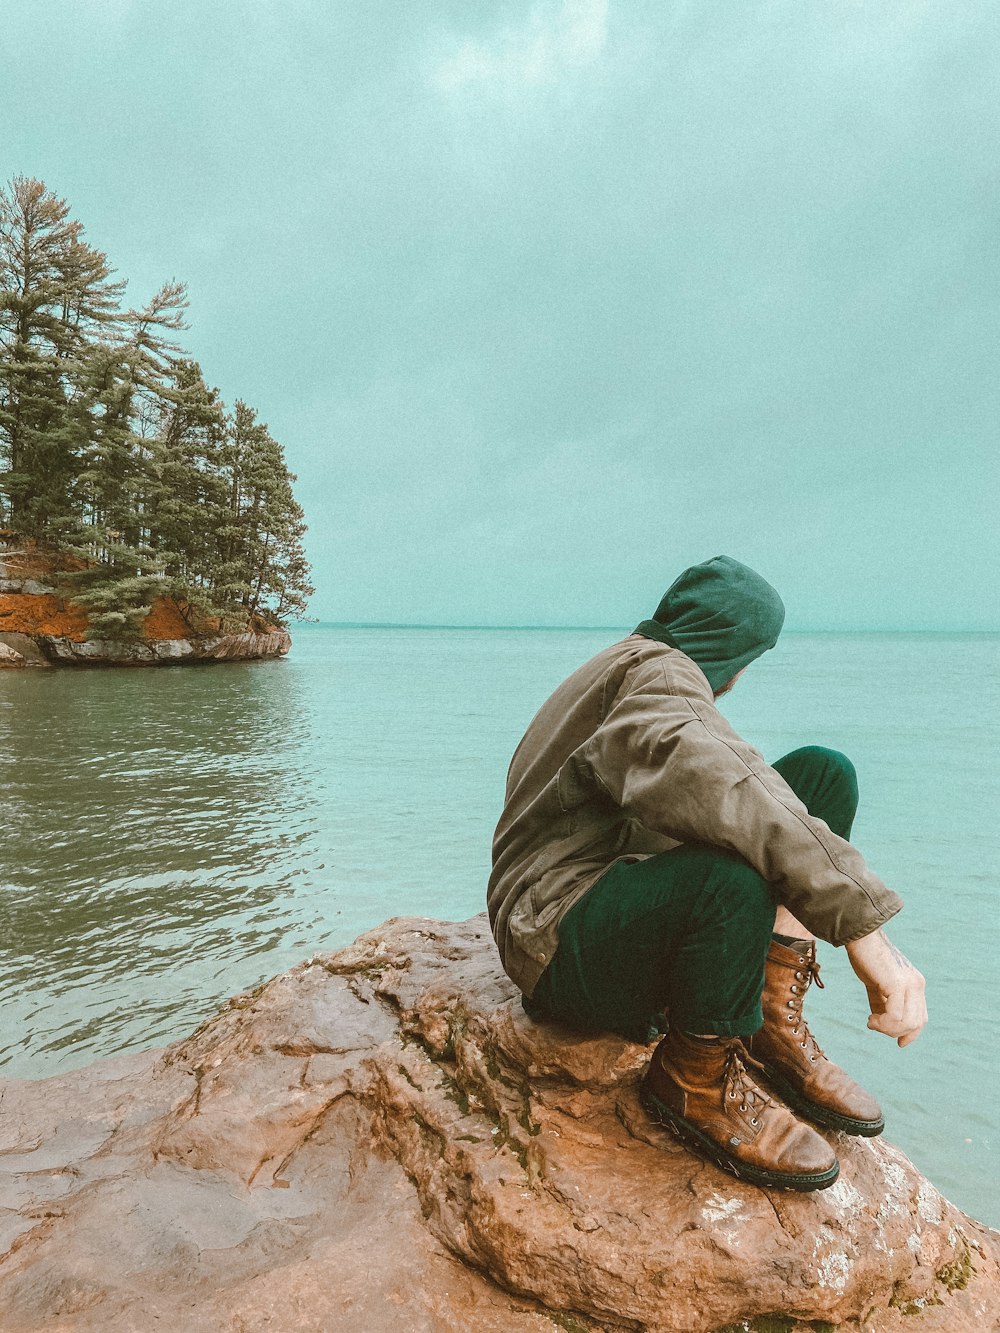 Mann in grünem Kapuzenpulli und brauner Hose sitzt auf braunem Felsen in der Nähe von Gewässern während